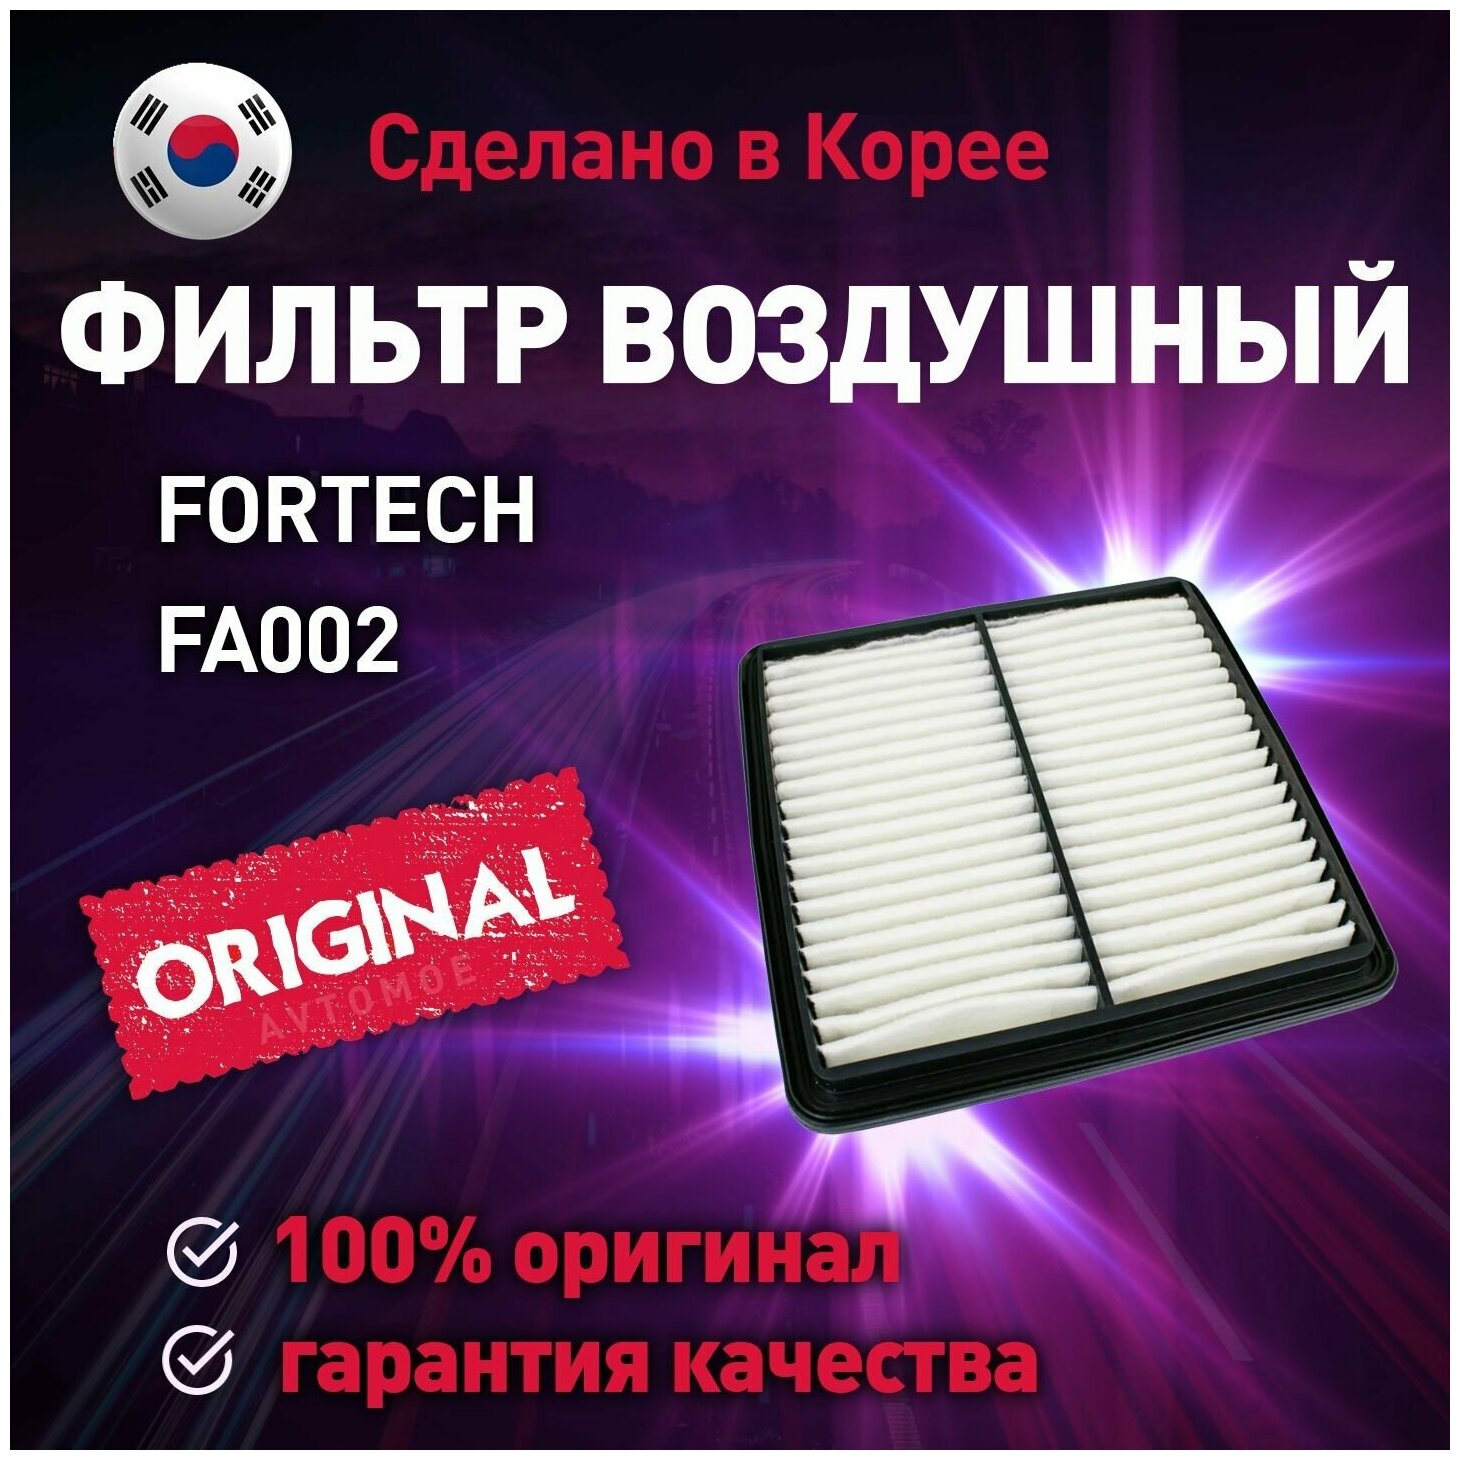 Фильтр воздушный Fortech для Chevrolet Lanos / Фортек для Шевроле Ланос